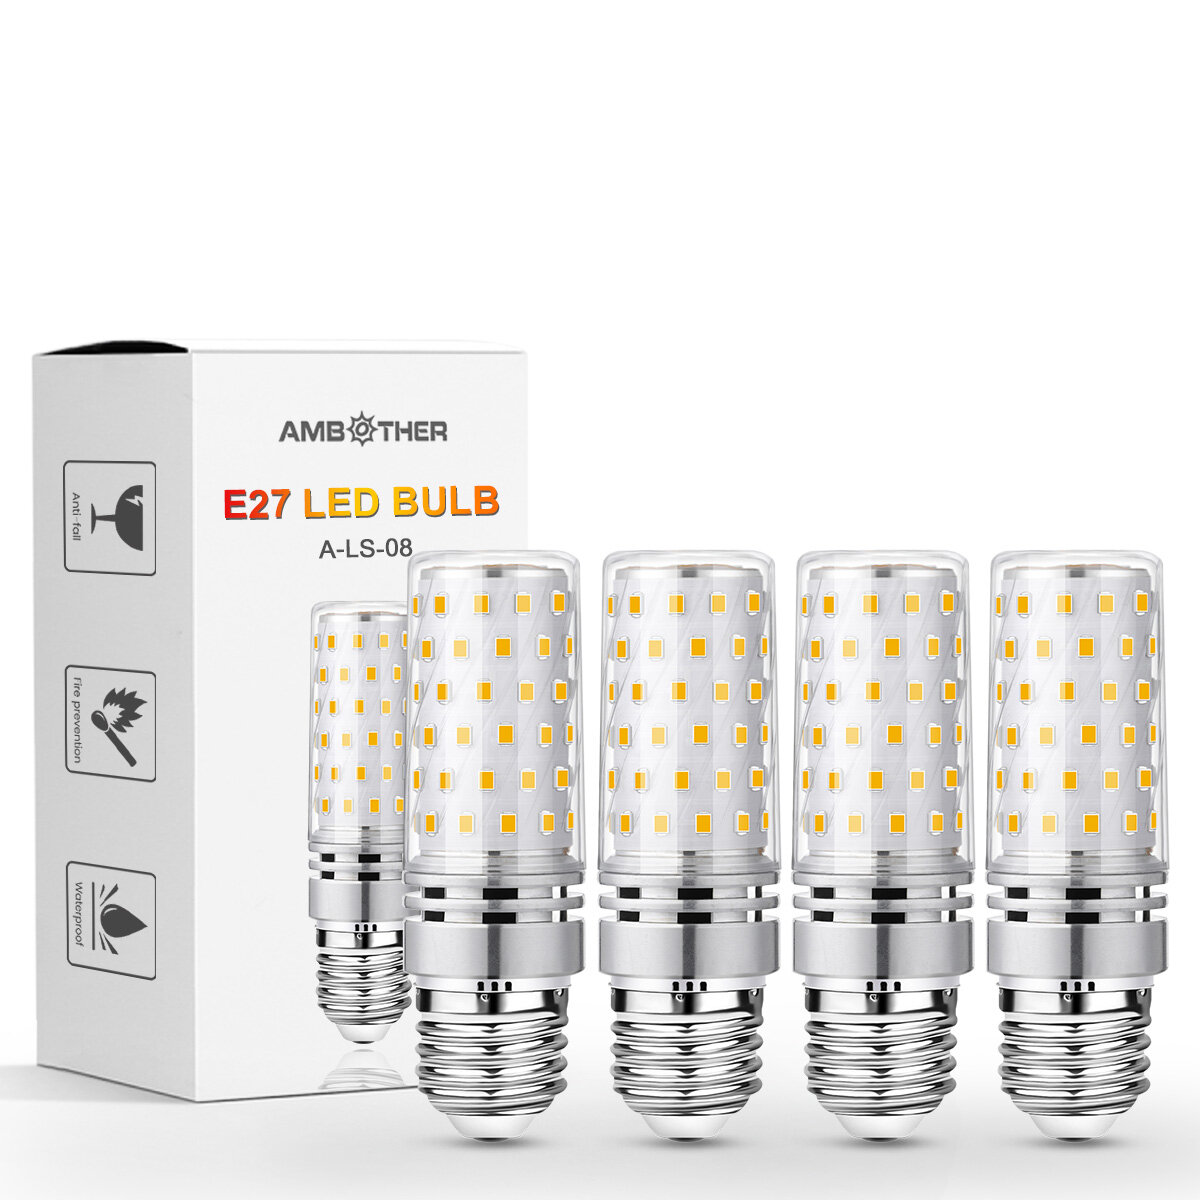 

4PCS LED Corn Light Bulb E27 7W 735LM 3000K Warm Light AC220-240V Save Energy Lamp